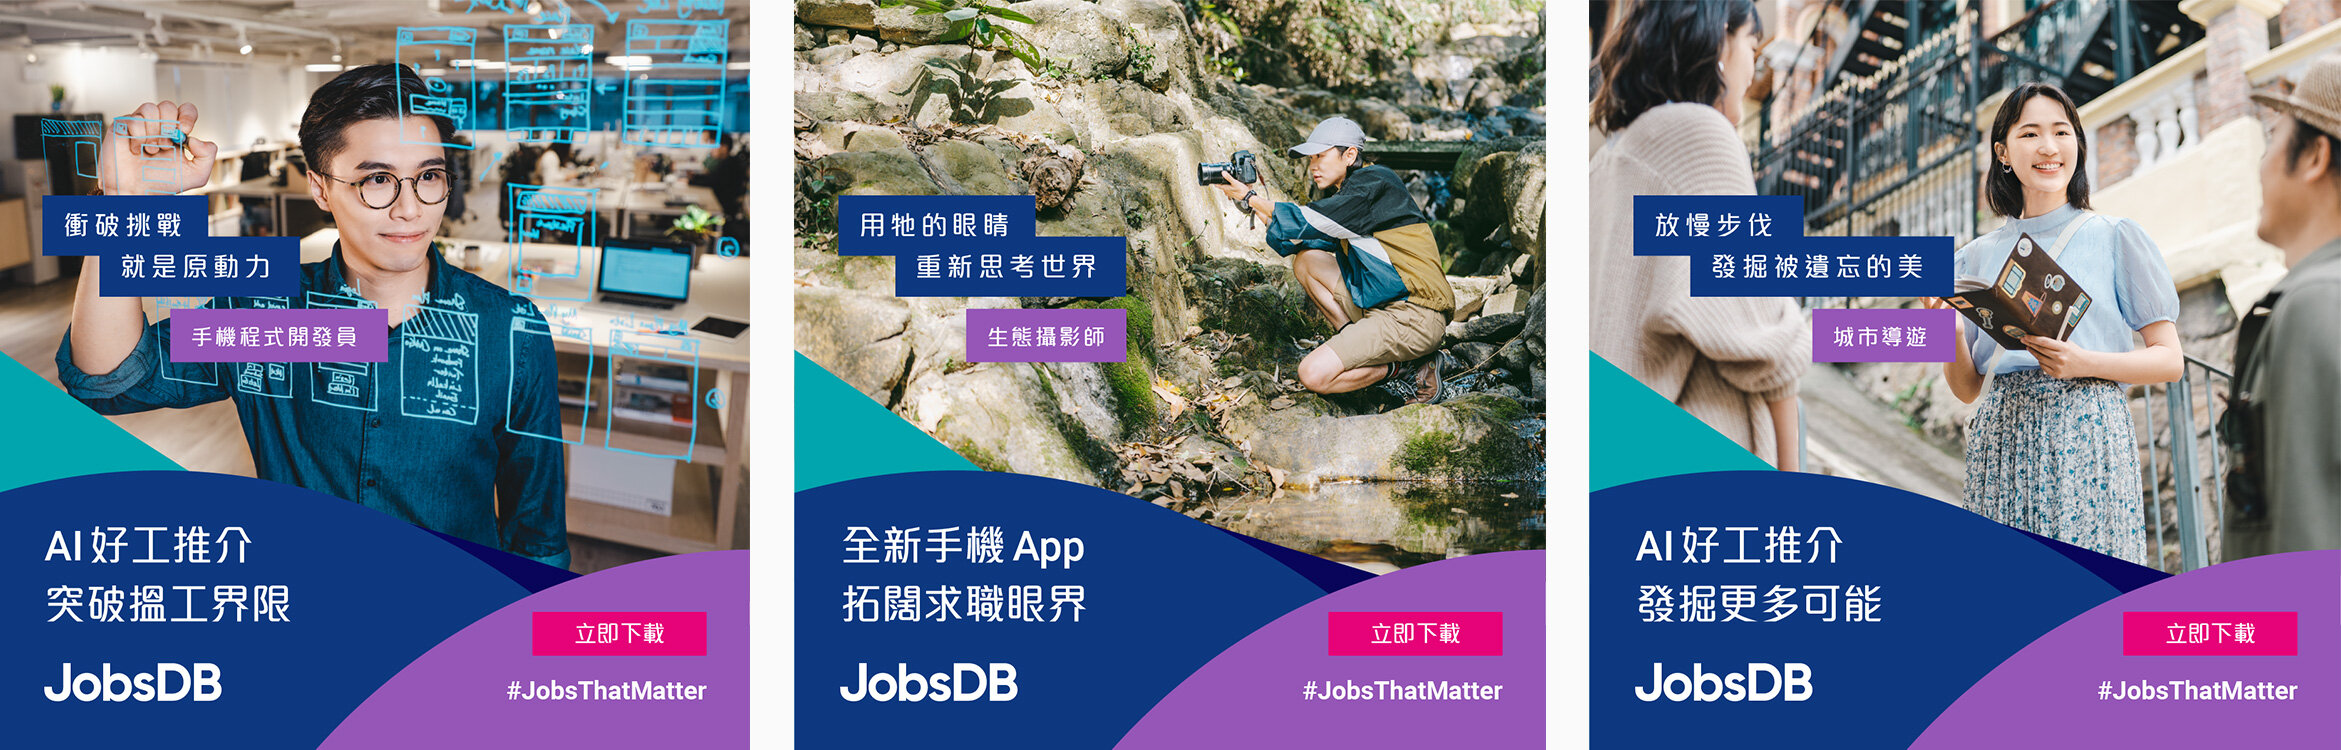 jobsDB_ad-1.jpg